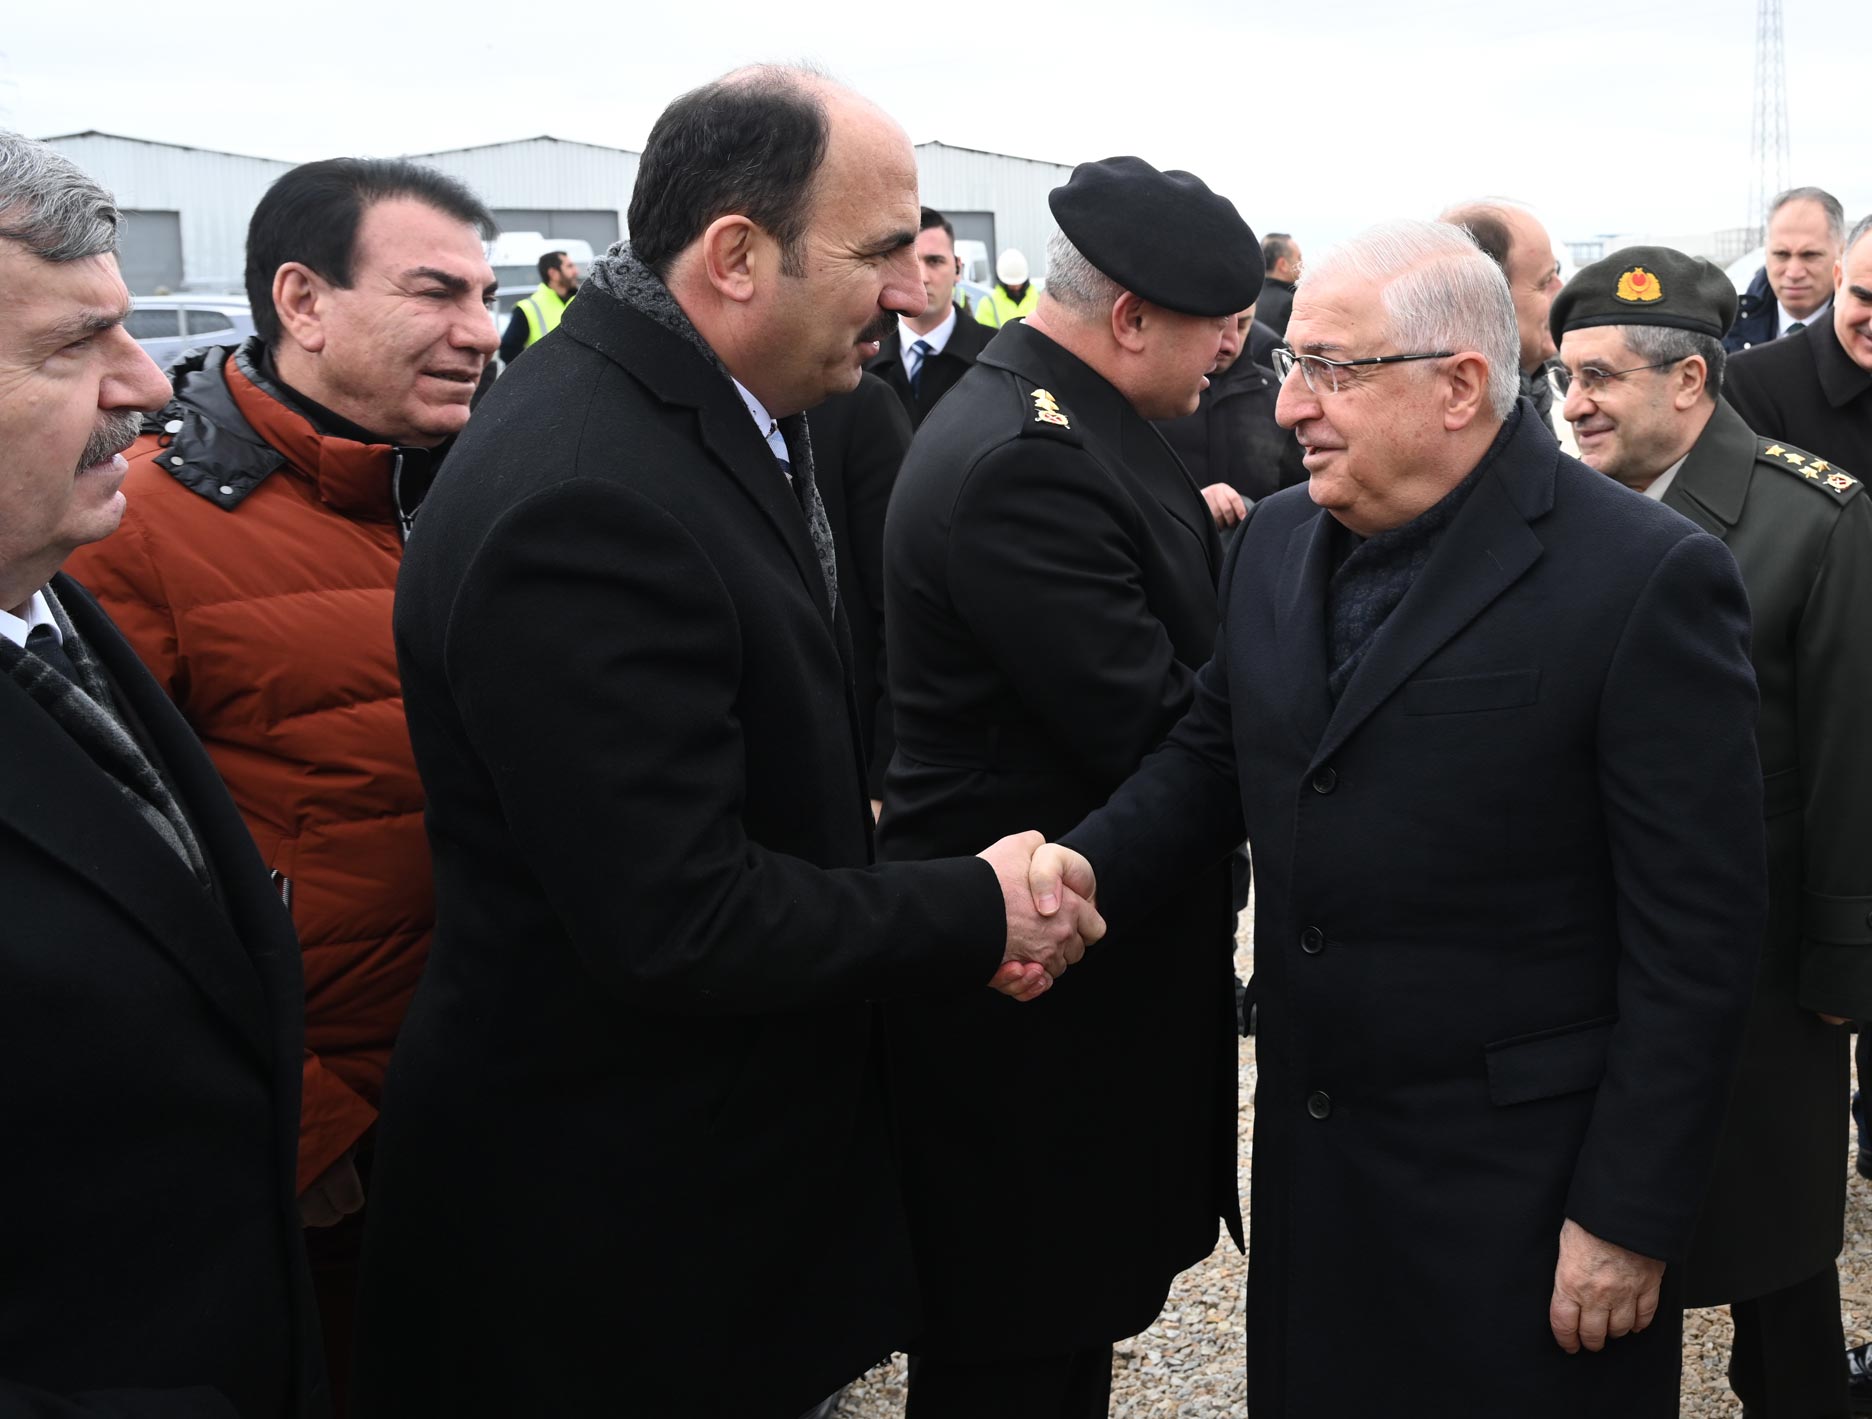 Başkan Altay: ”Konya, kentsel dönüşümünde çok büyük bir mesafe kat etti”